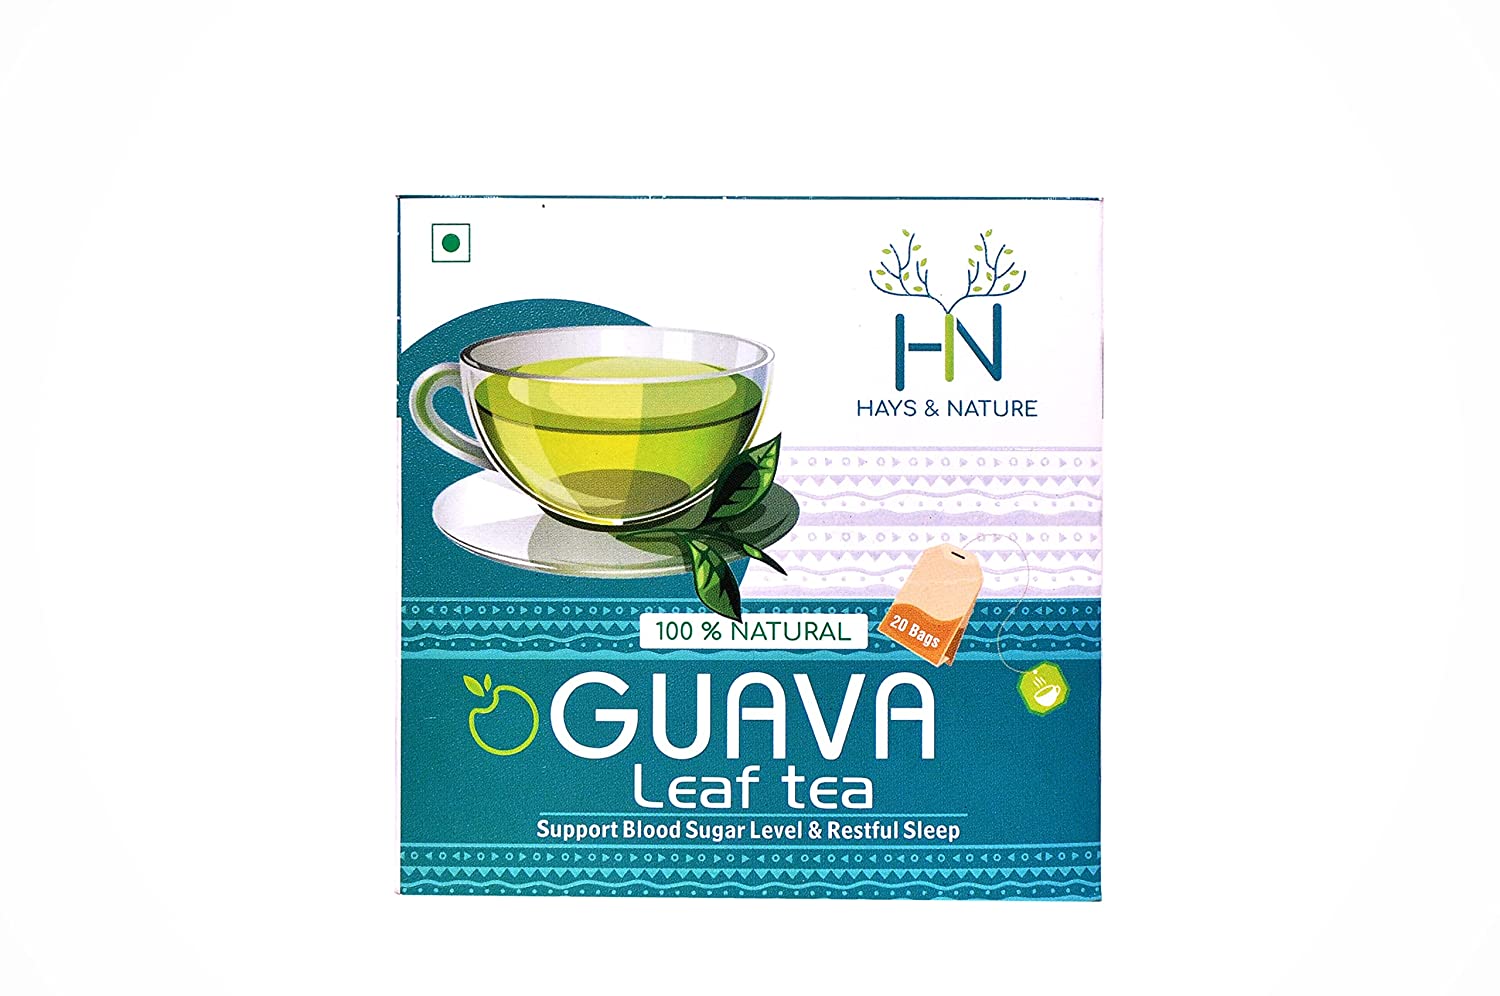 Hays & Nature Gauva Leaf Tea Image